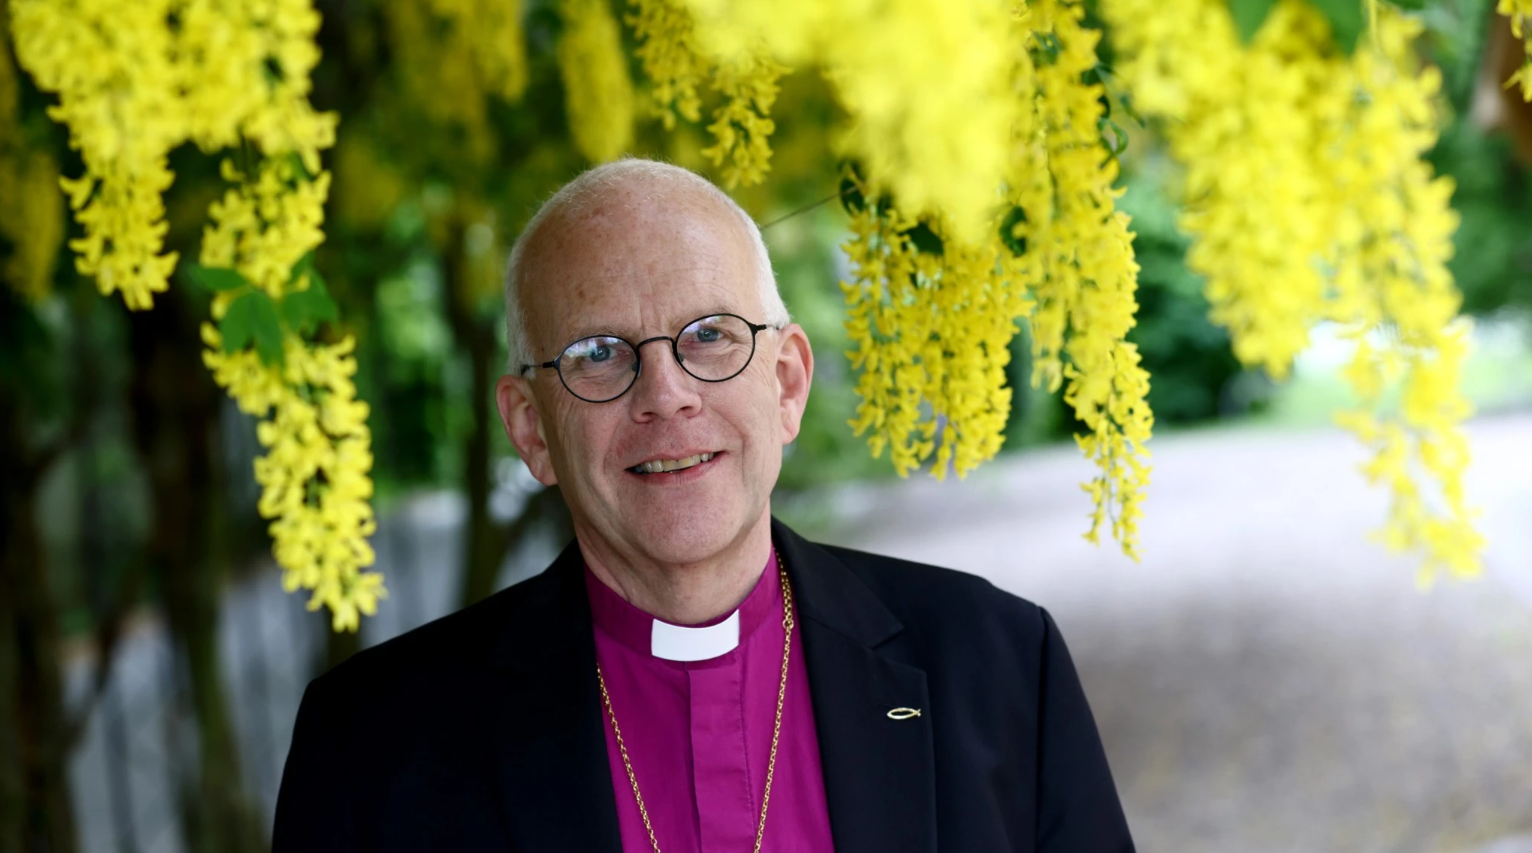 Ärkbiskop Martin står i lila biskopsskjorta och kavaj.